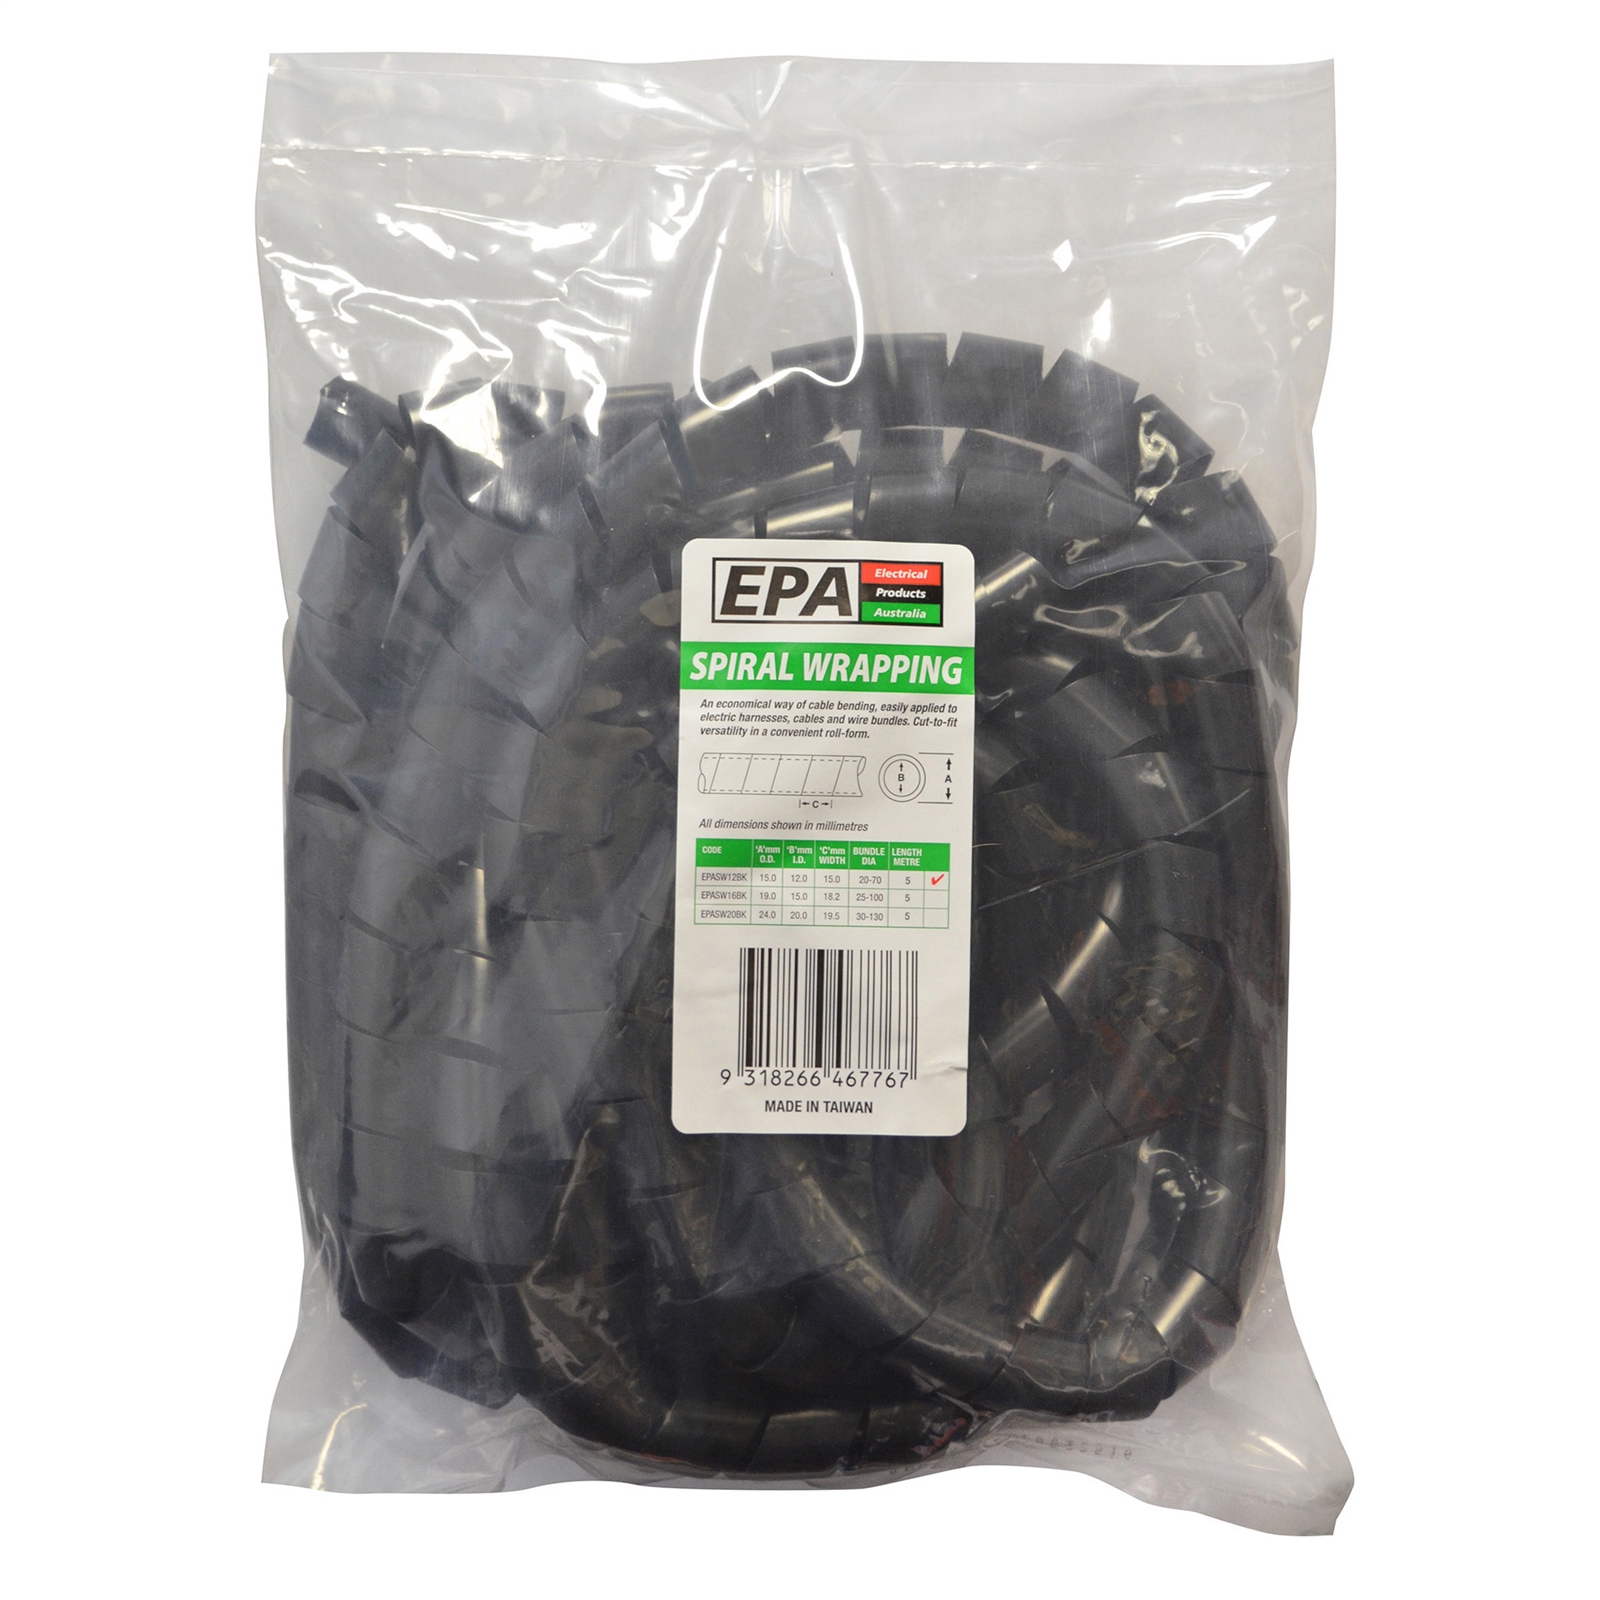 EPA 12mm x 5m Black Spiral Wrap